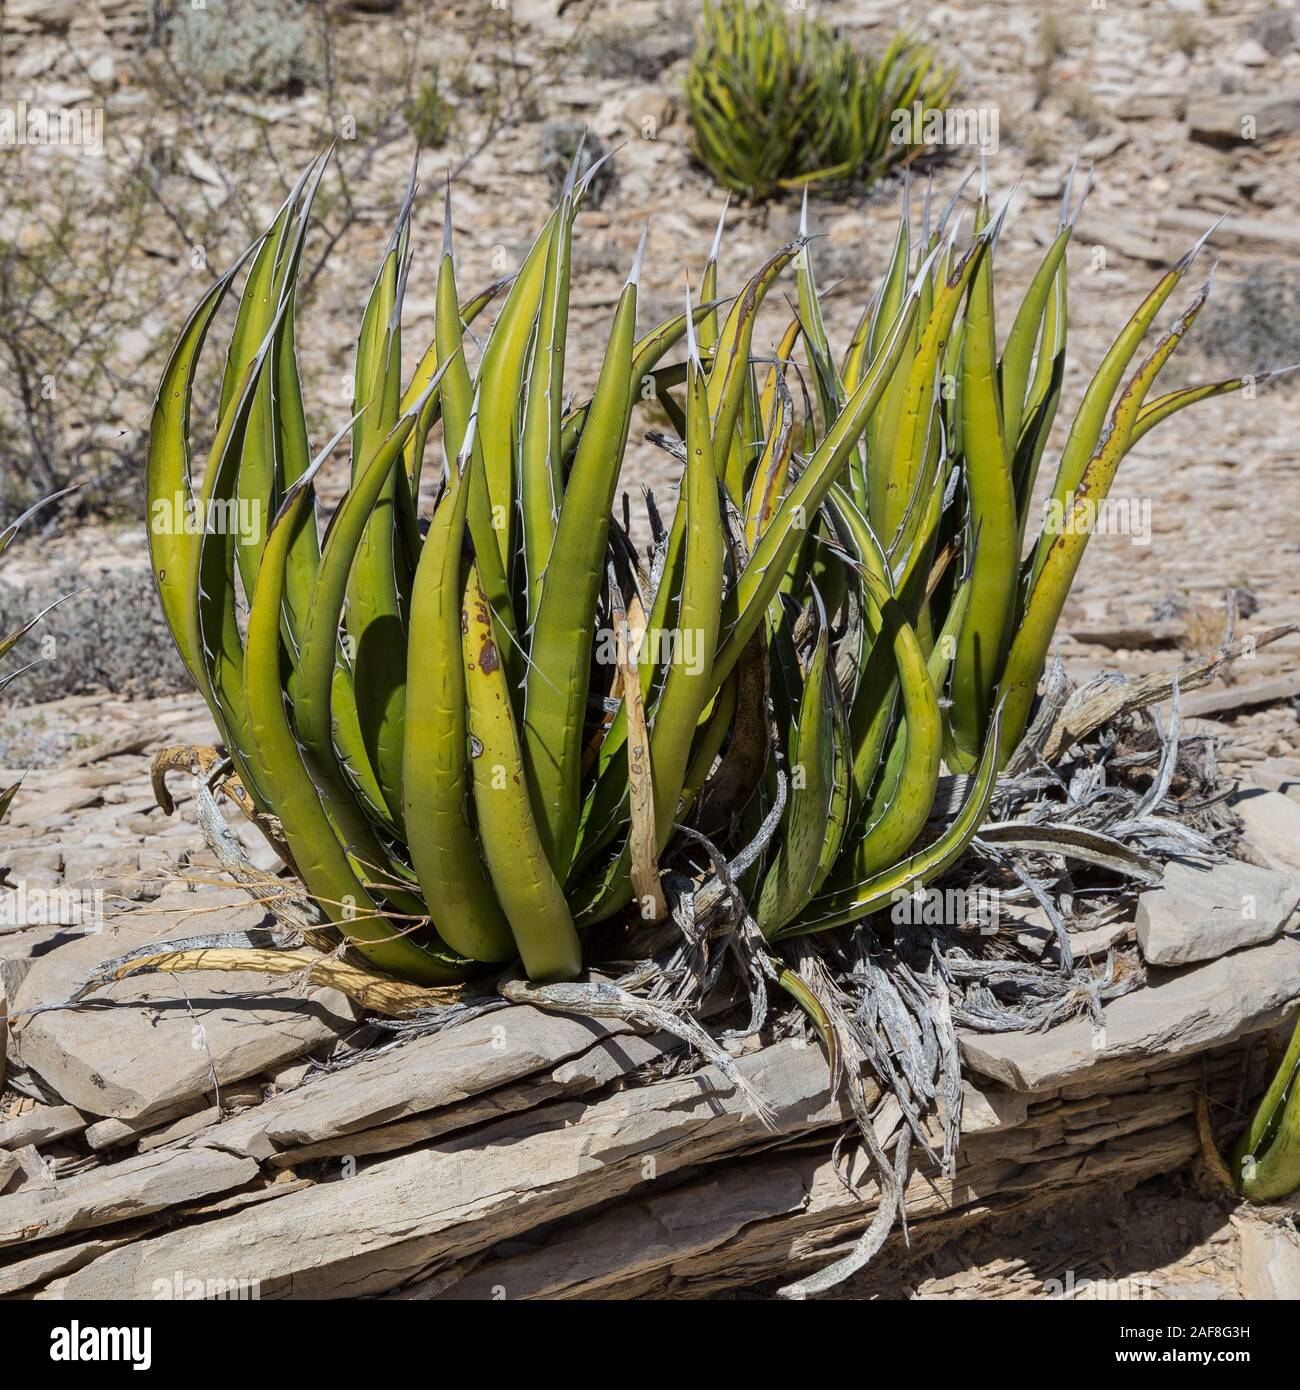 Parco nazionale di Big Bend, Texas. Agave lechuguilla, nel deserto del Chihuahuan ambiente. Foto Stock